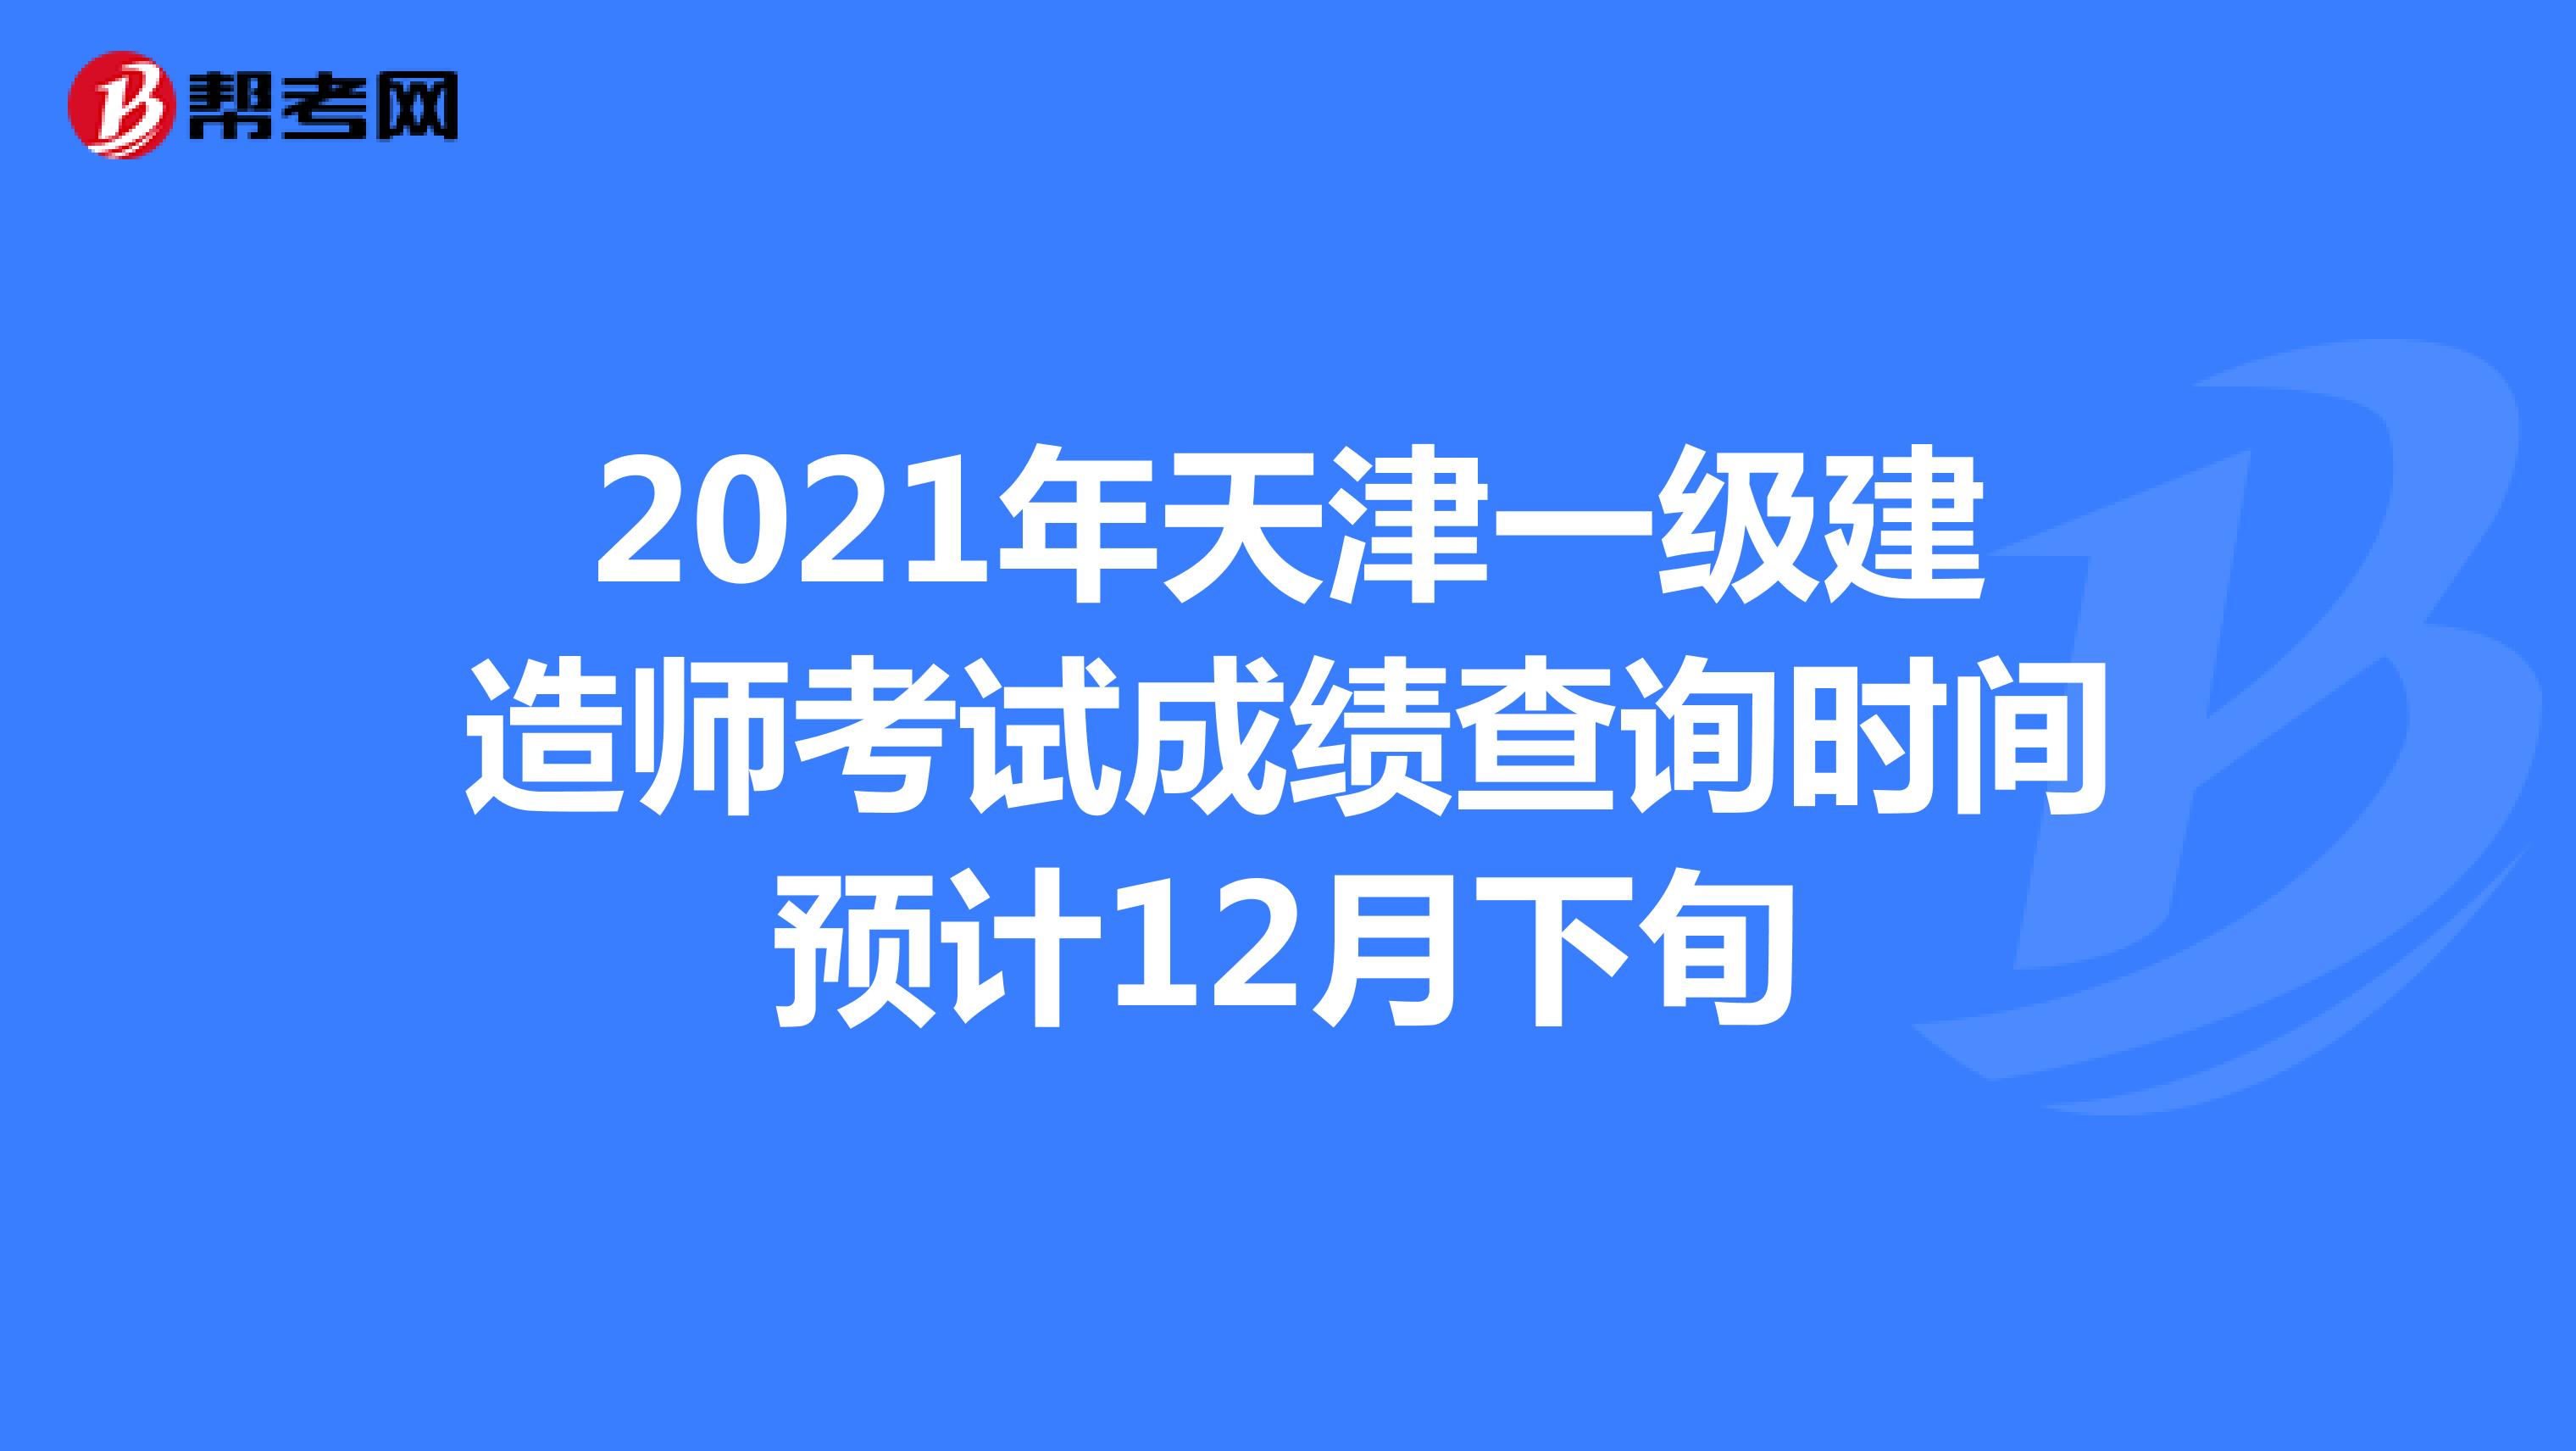 2021年天津一级建造师考试成绩查询时间预计12月下旬